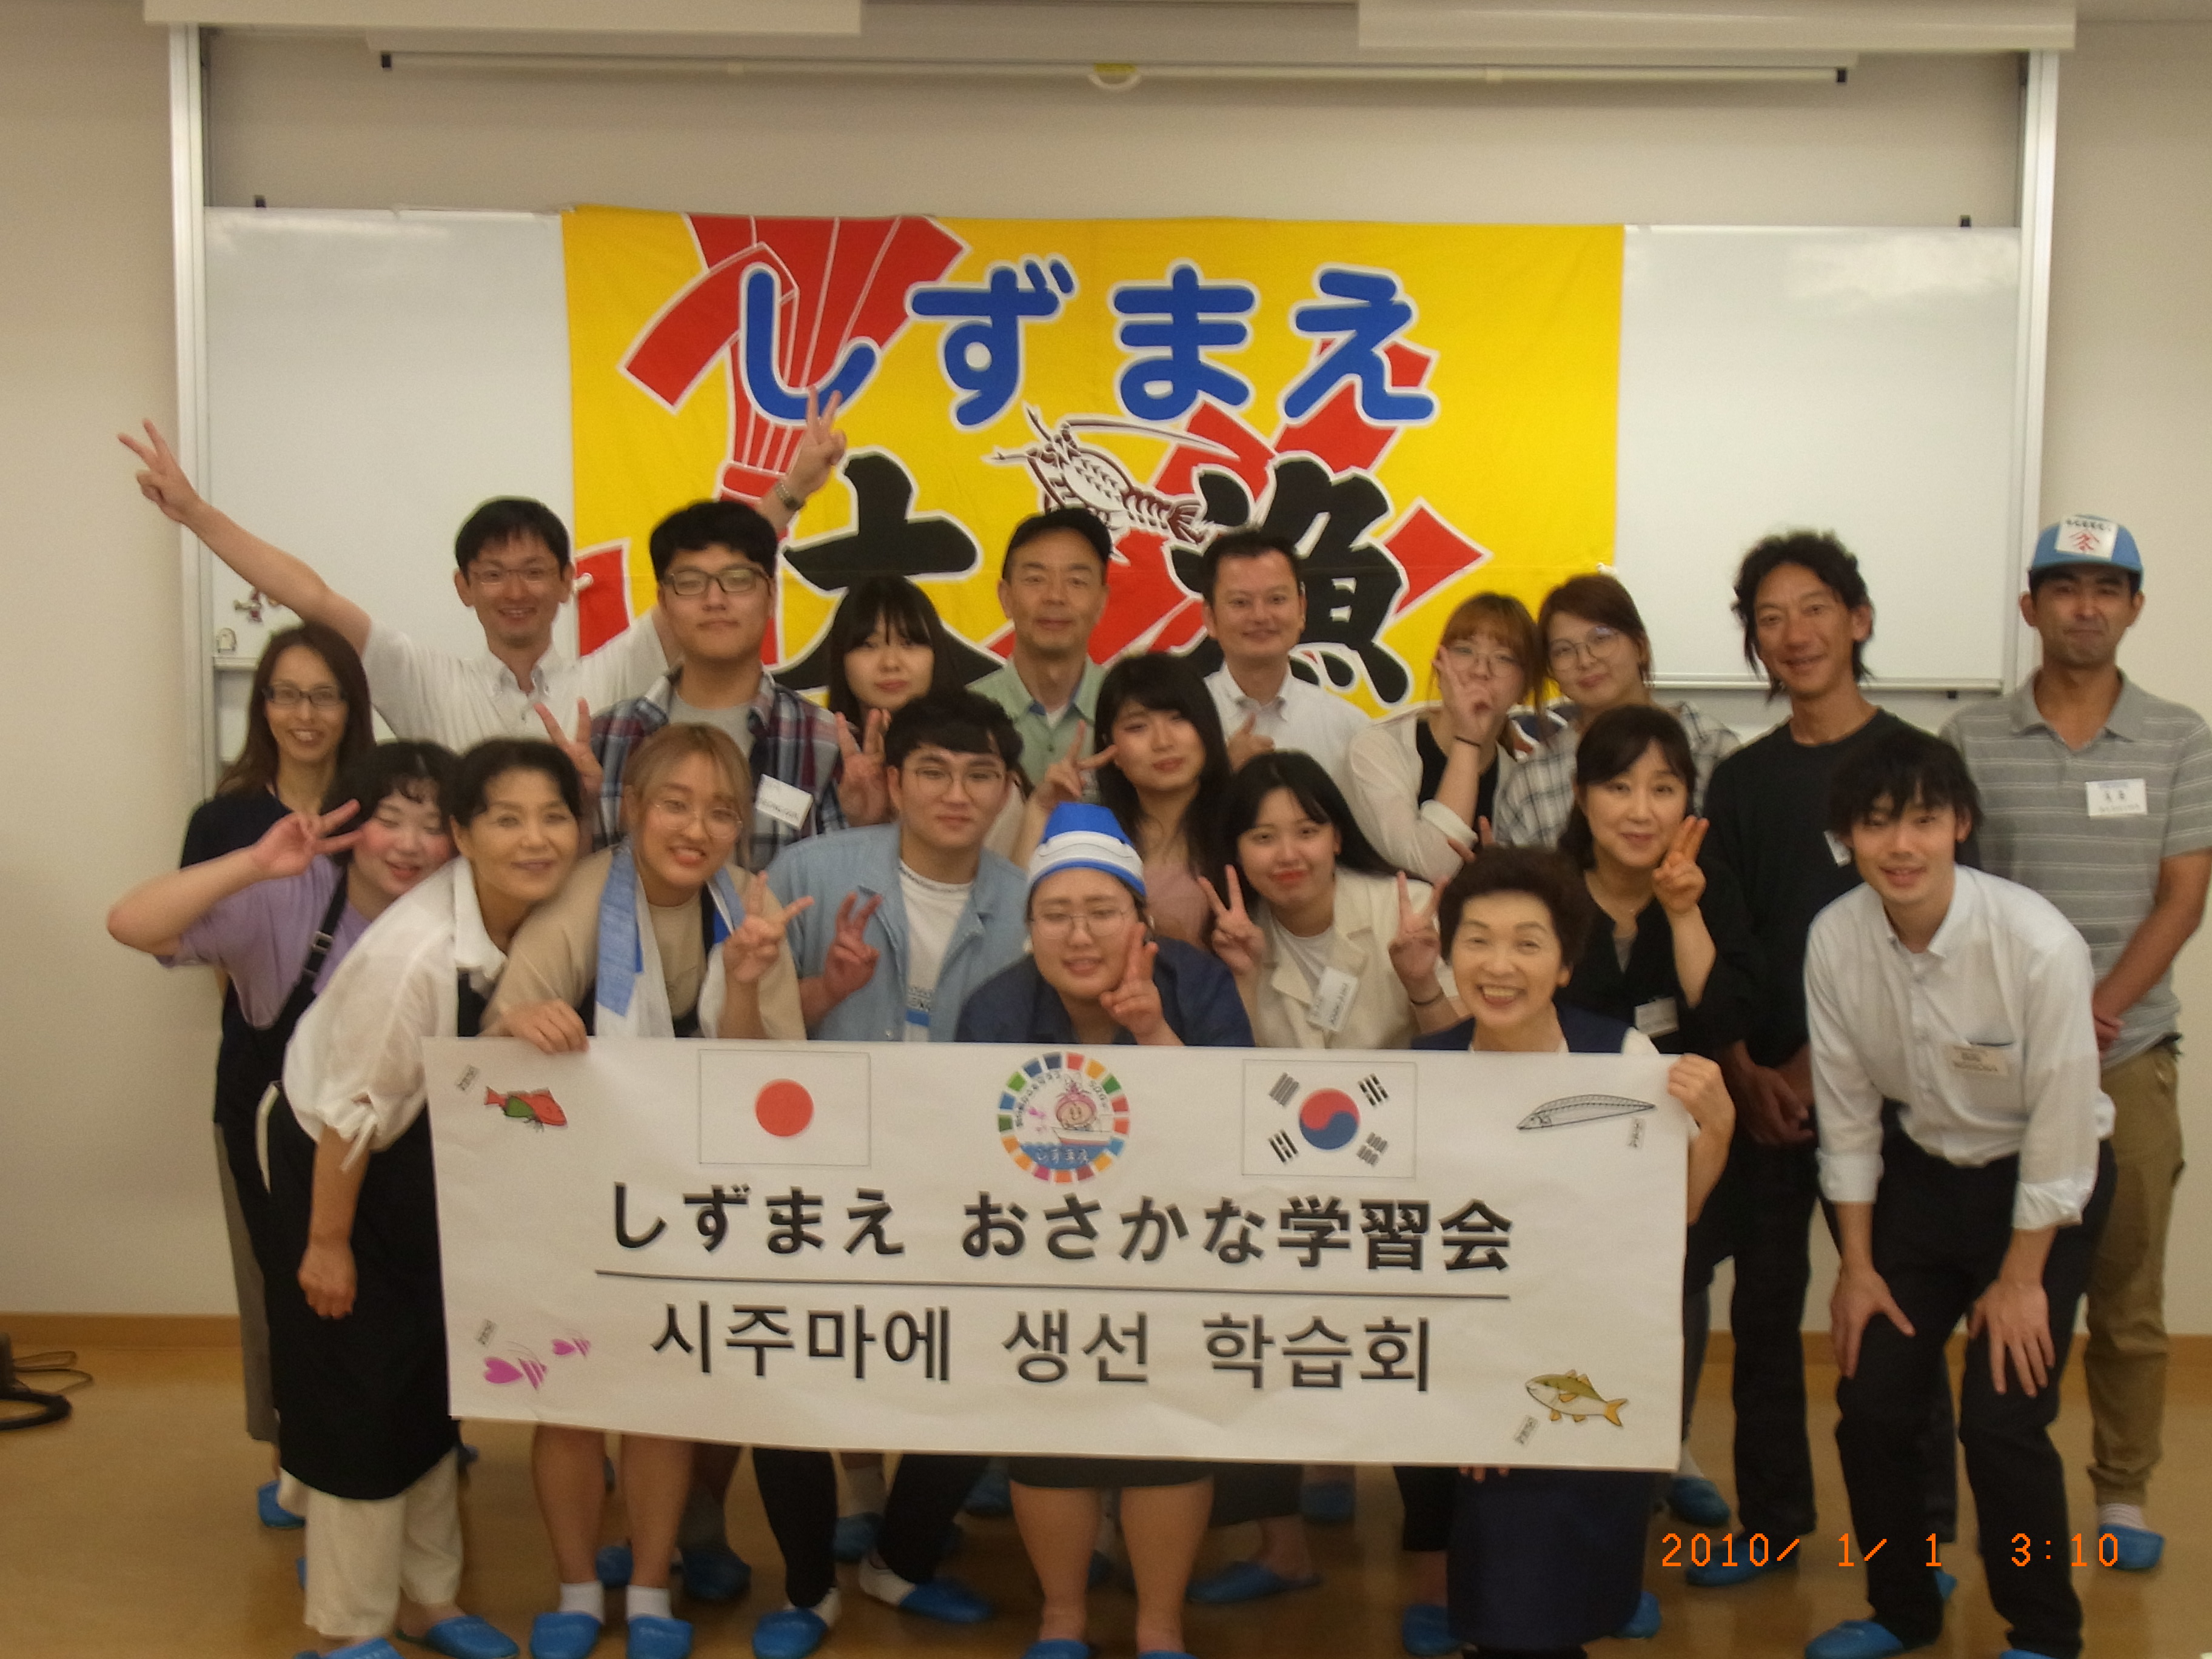 한국과 일본을 음식으로 연결하는 일본외식조리학부